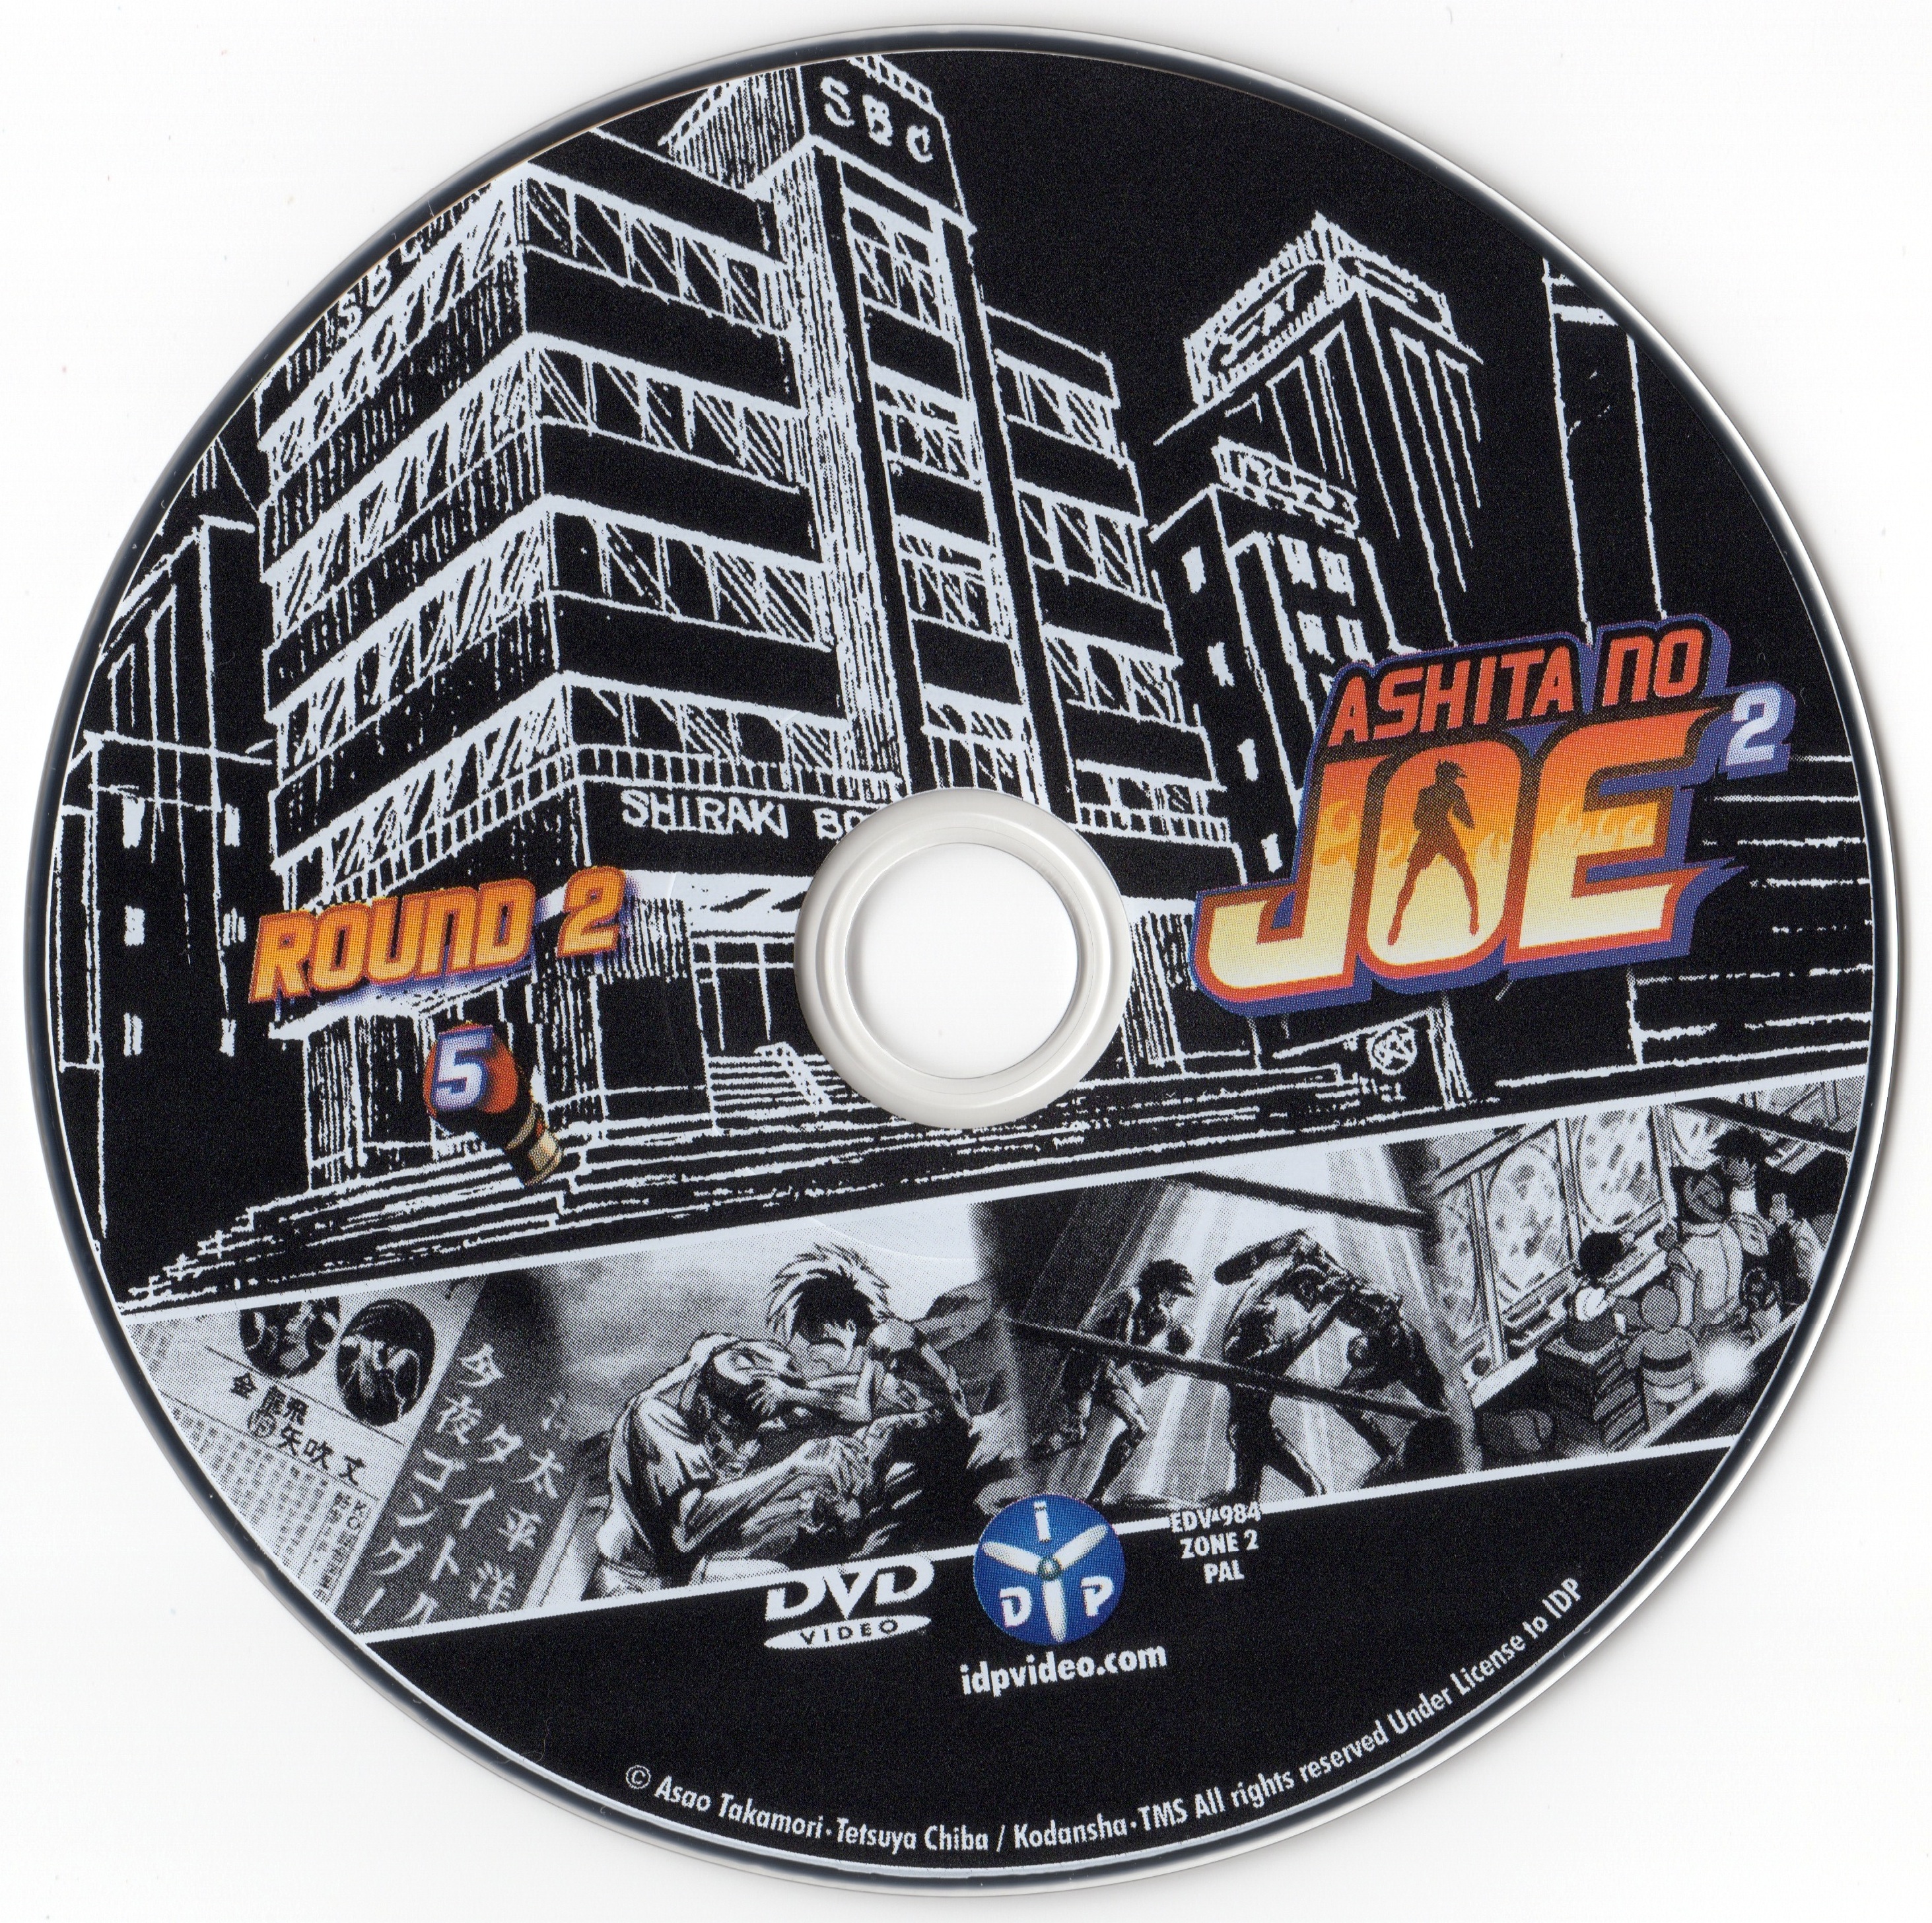 Ashita No Joe 2 Round 1 DVD 5